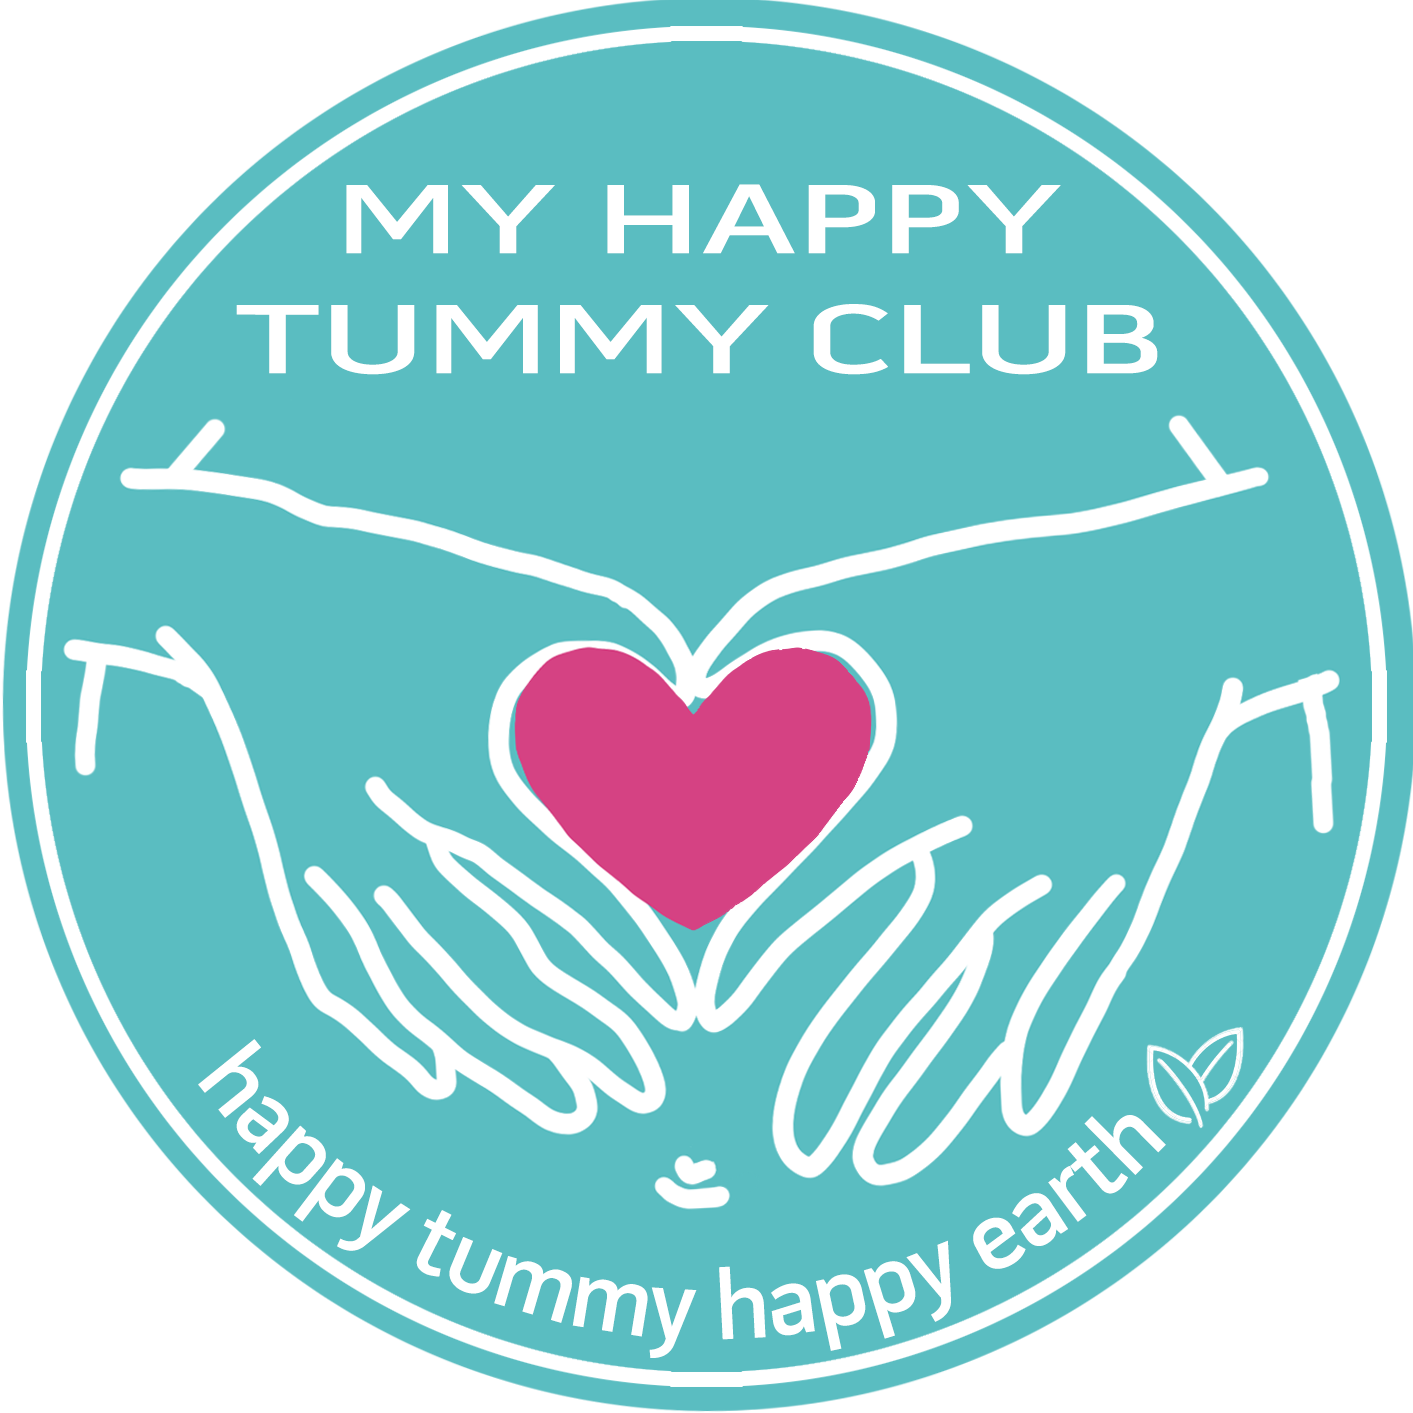 My Happy Tummy Club